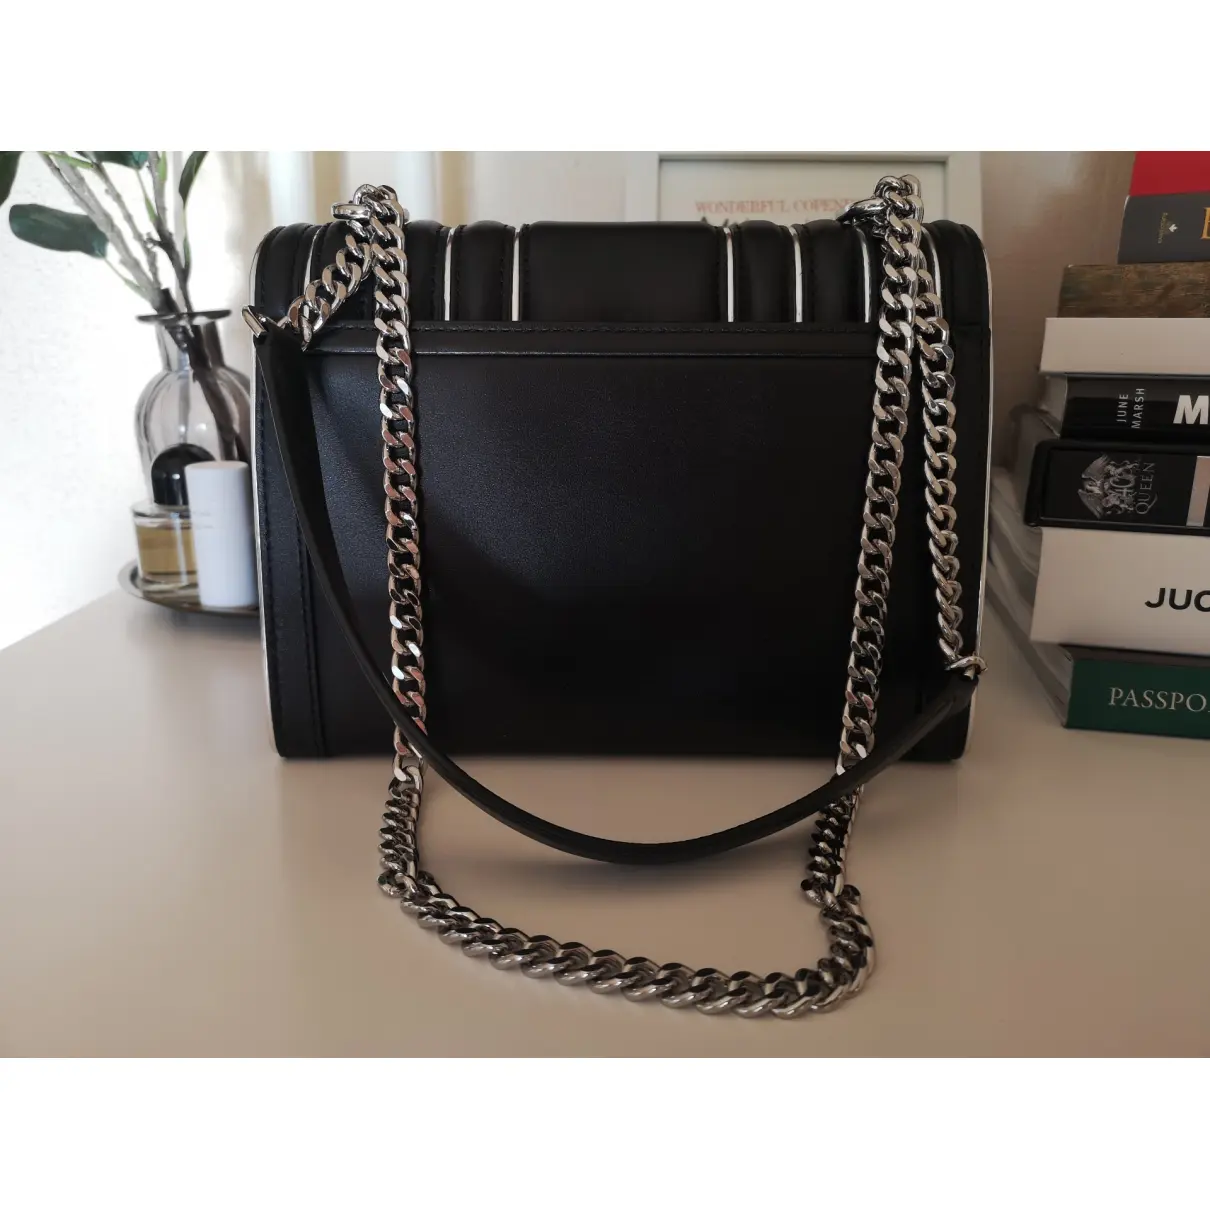 Buy Michael Kors Whitney leather handbag online